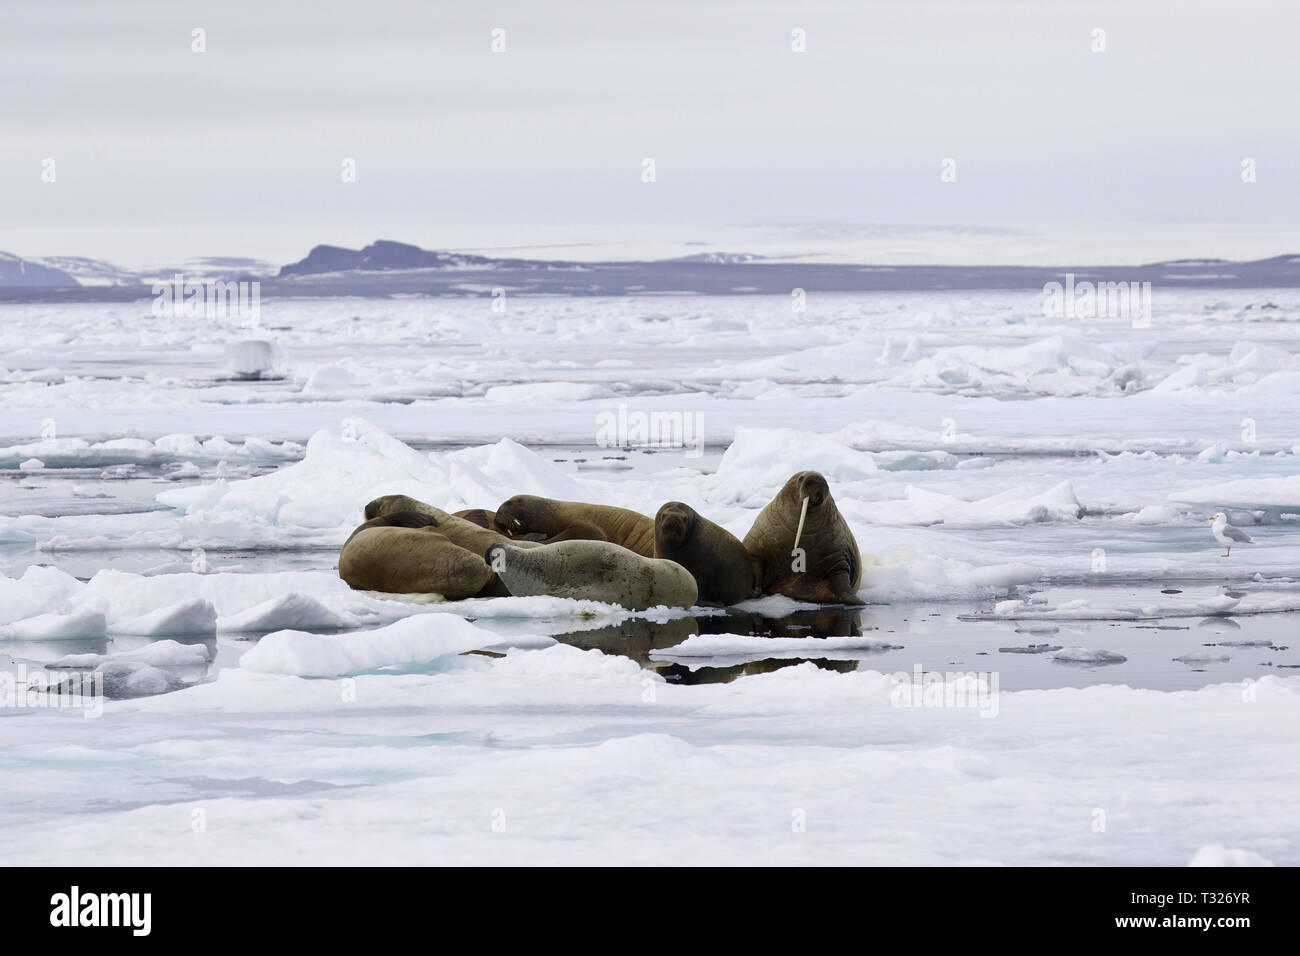 Group of Atlantic Walrus, Odobenus rosmarus, Spitsbergen, Arctic Ocean, Norway Stock Photo